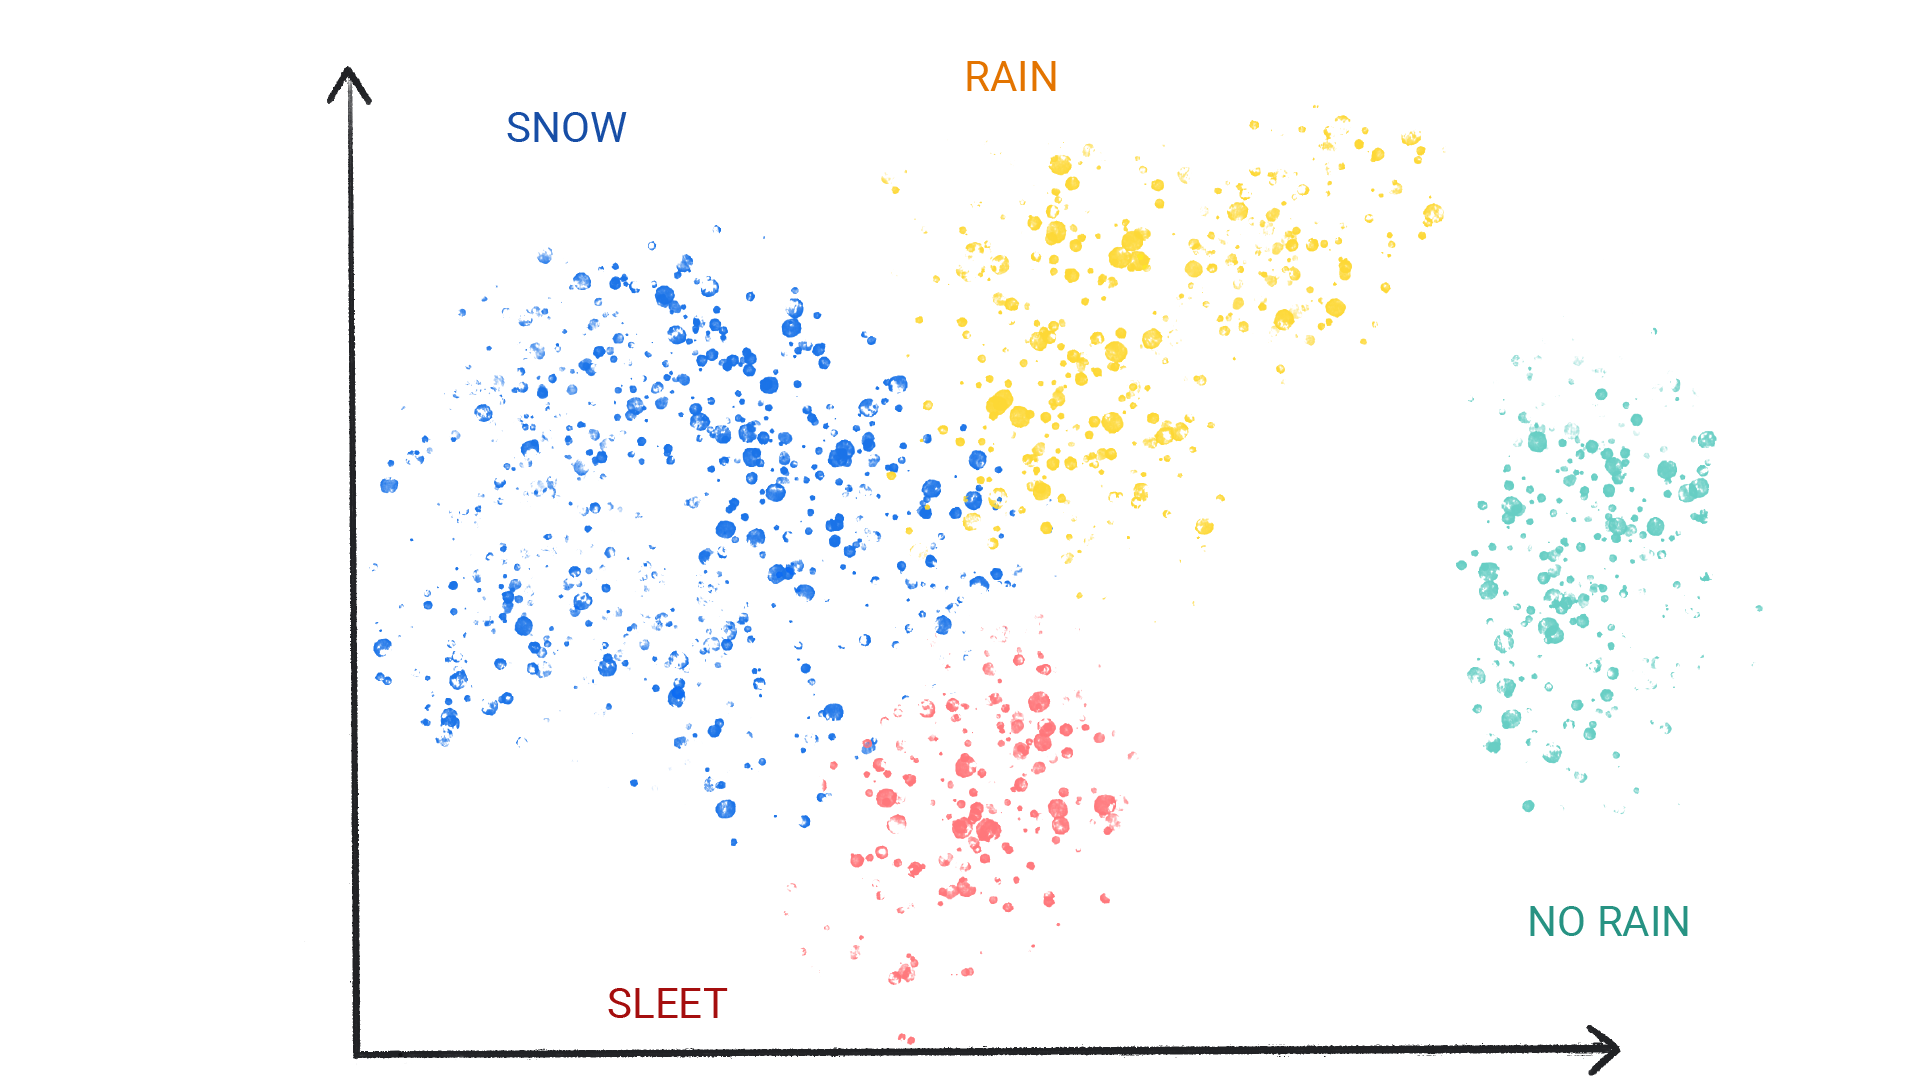 תמונה של נקודות צבעוניות באשכולות שמסומנים כשלג, גשם, ברד או גשם.